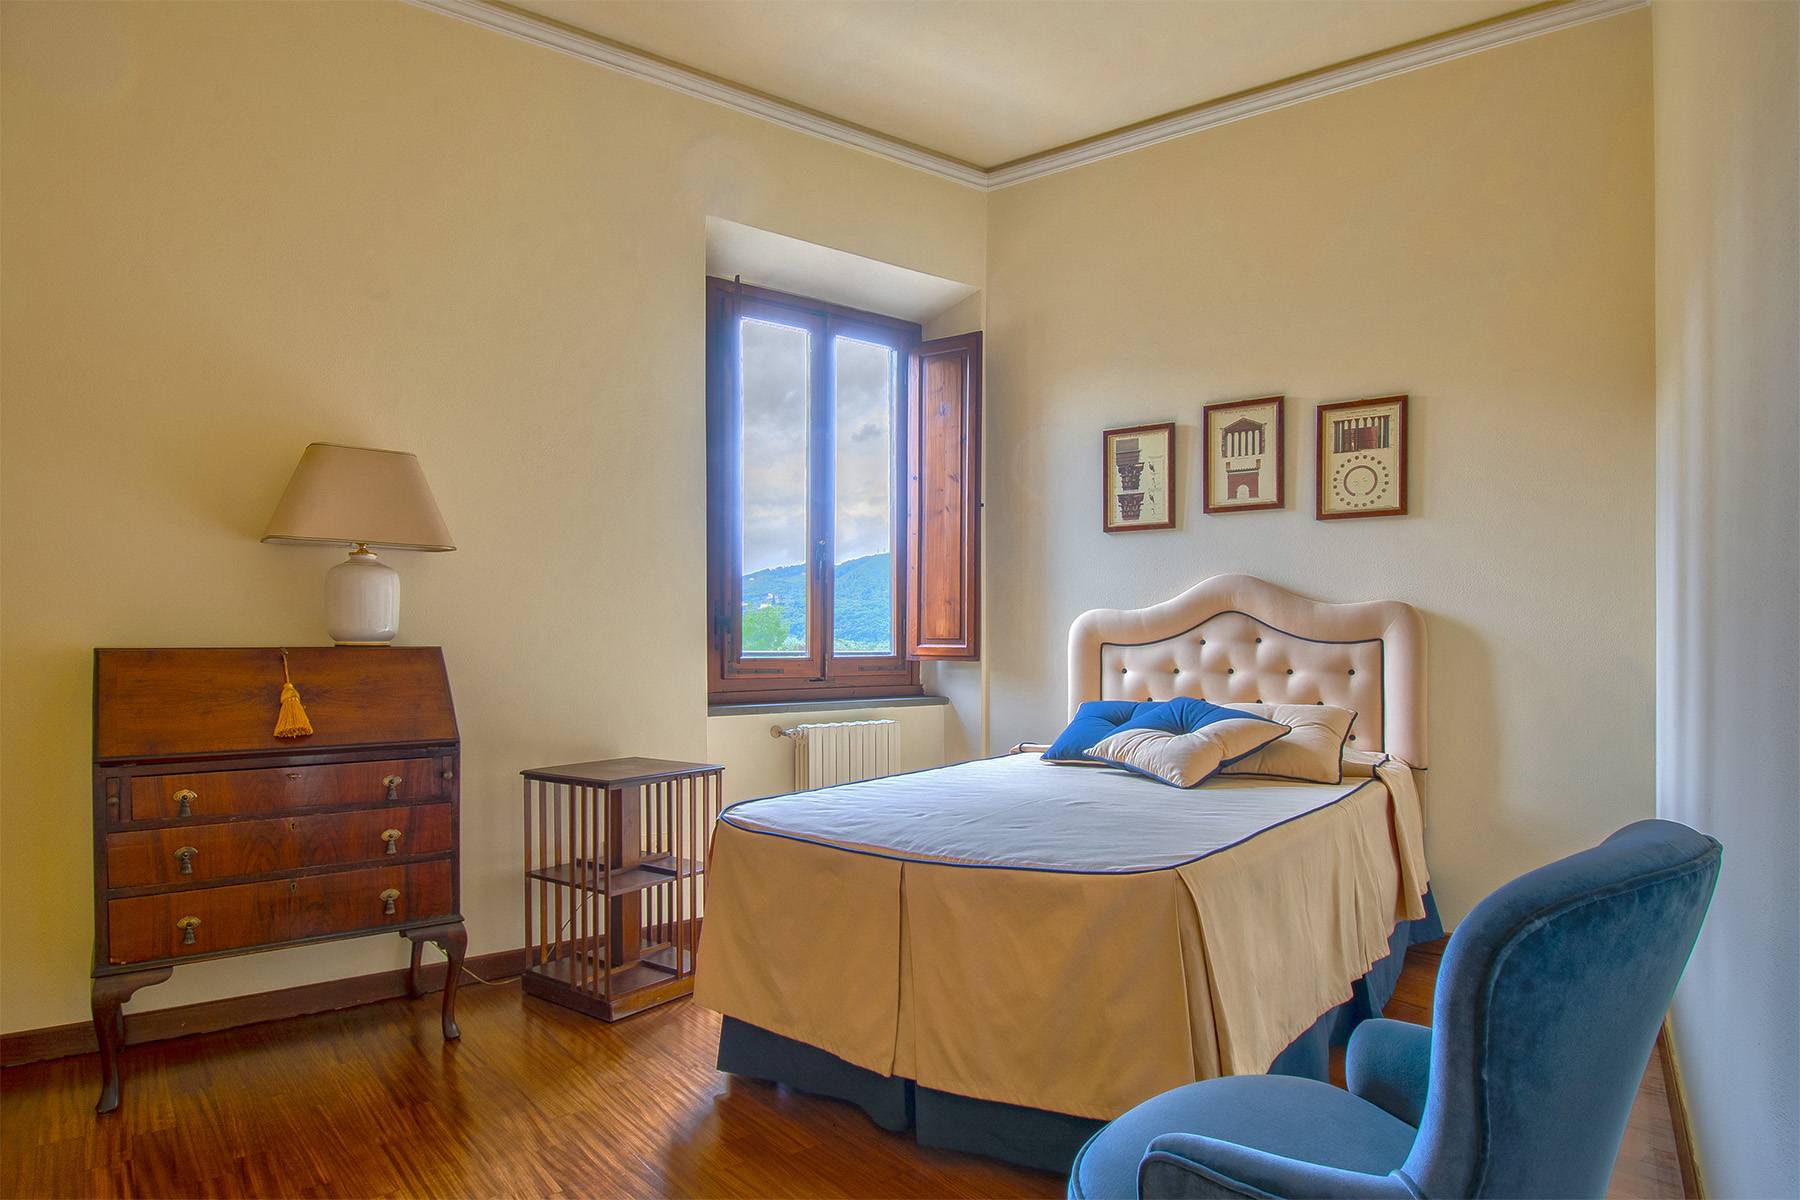 Appartamento in Vendita a Firenze: 5 locali, 220 mq - Foto 12